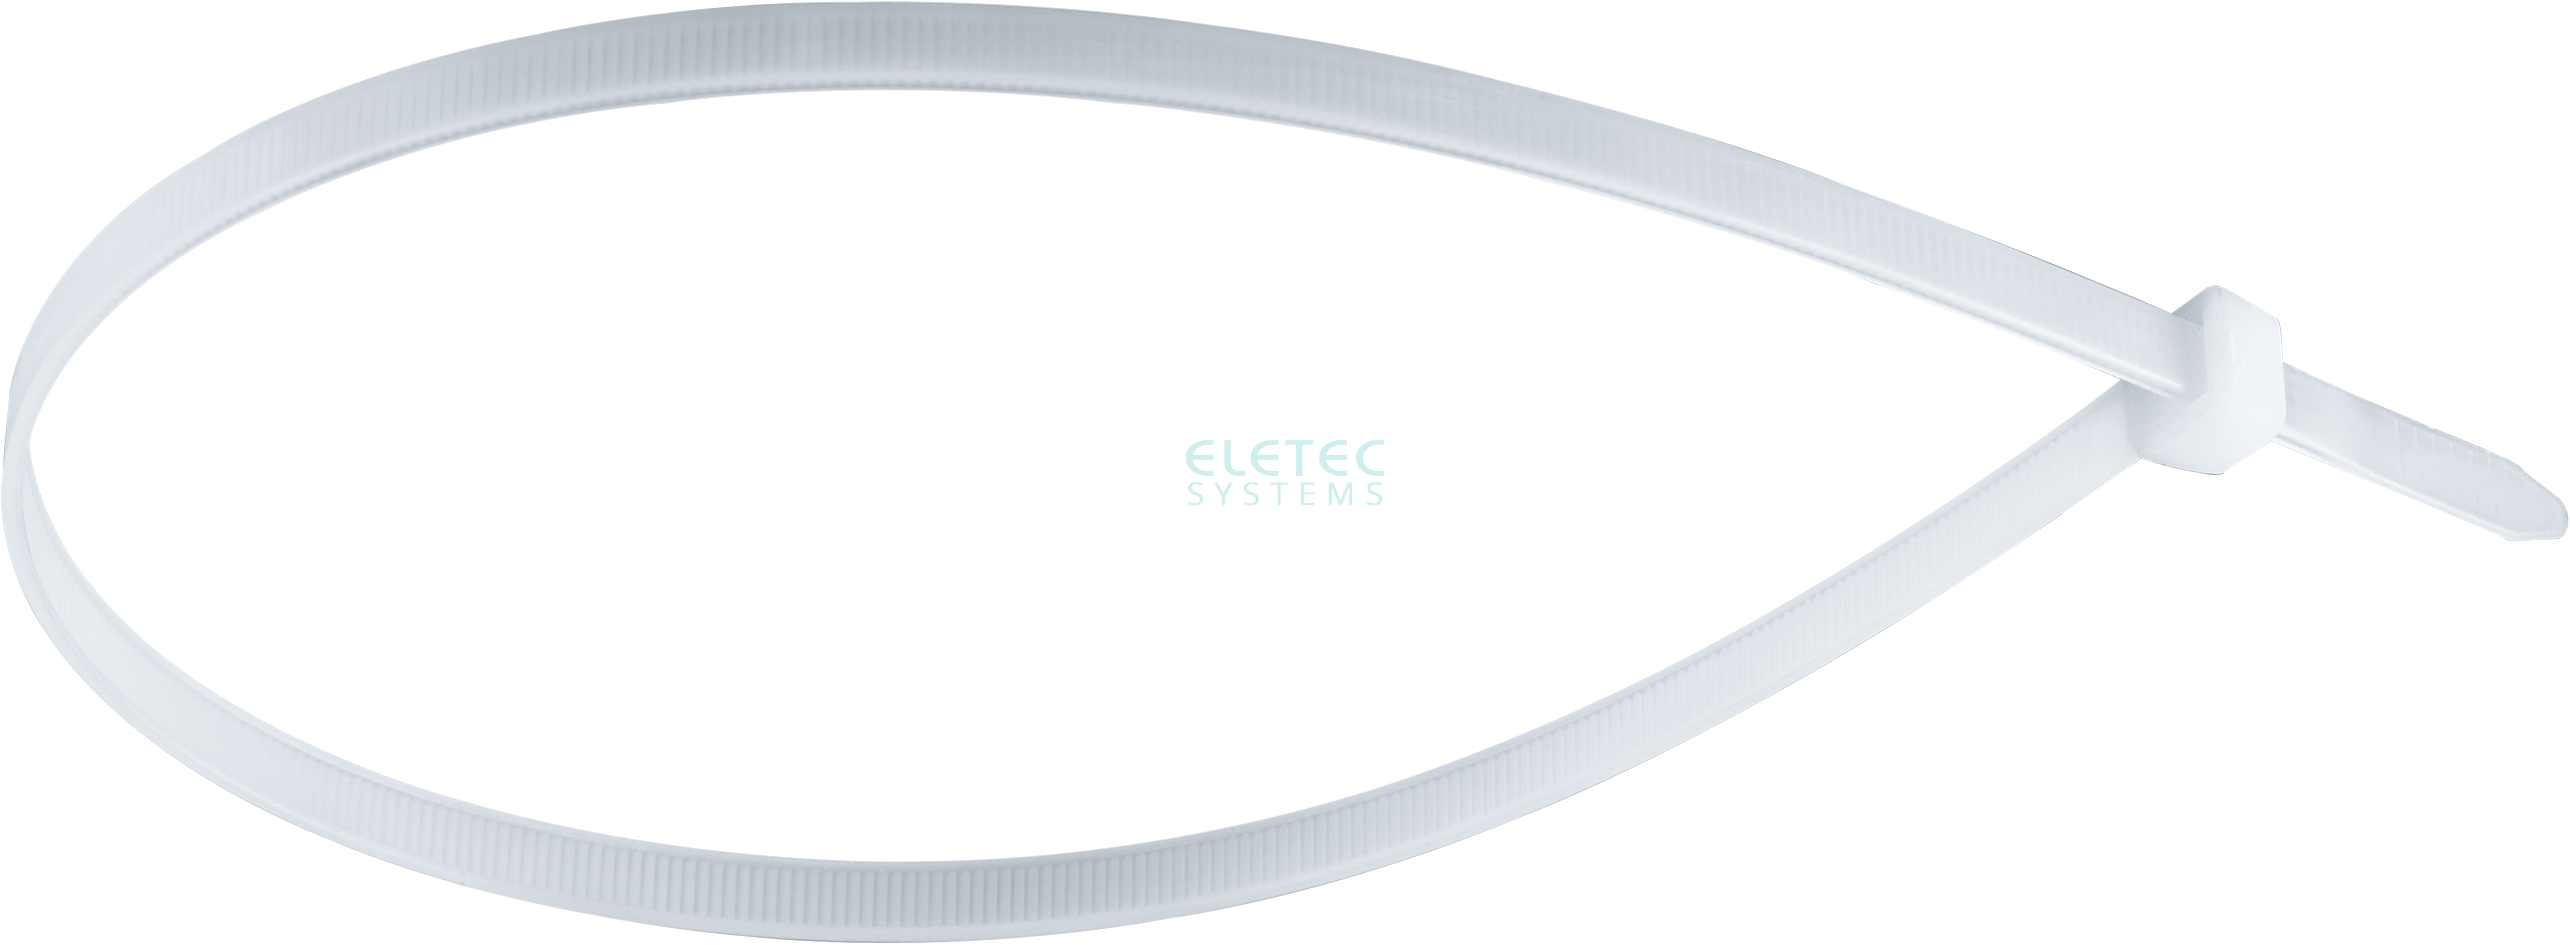 картинка Стяжка для кабеля 80х2,4 бесцветная (100 шт) Eletec Systems